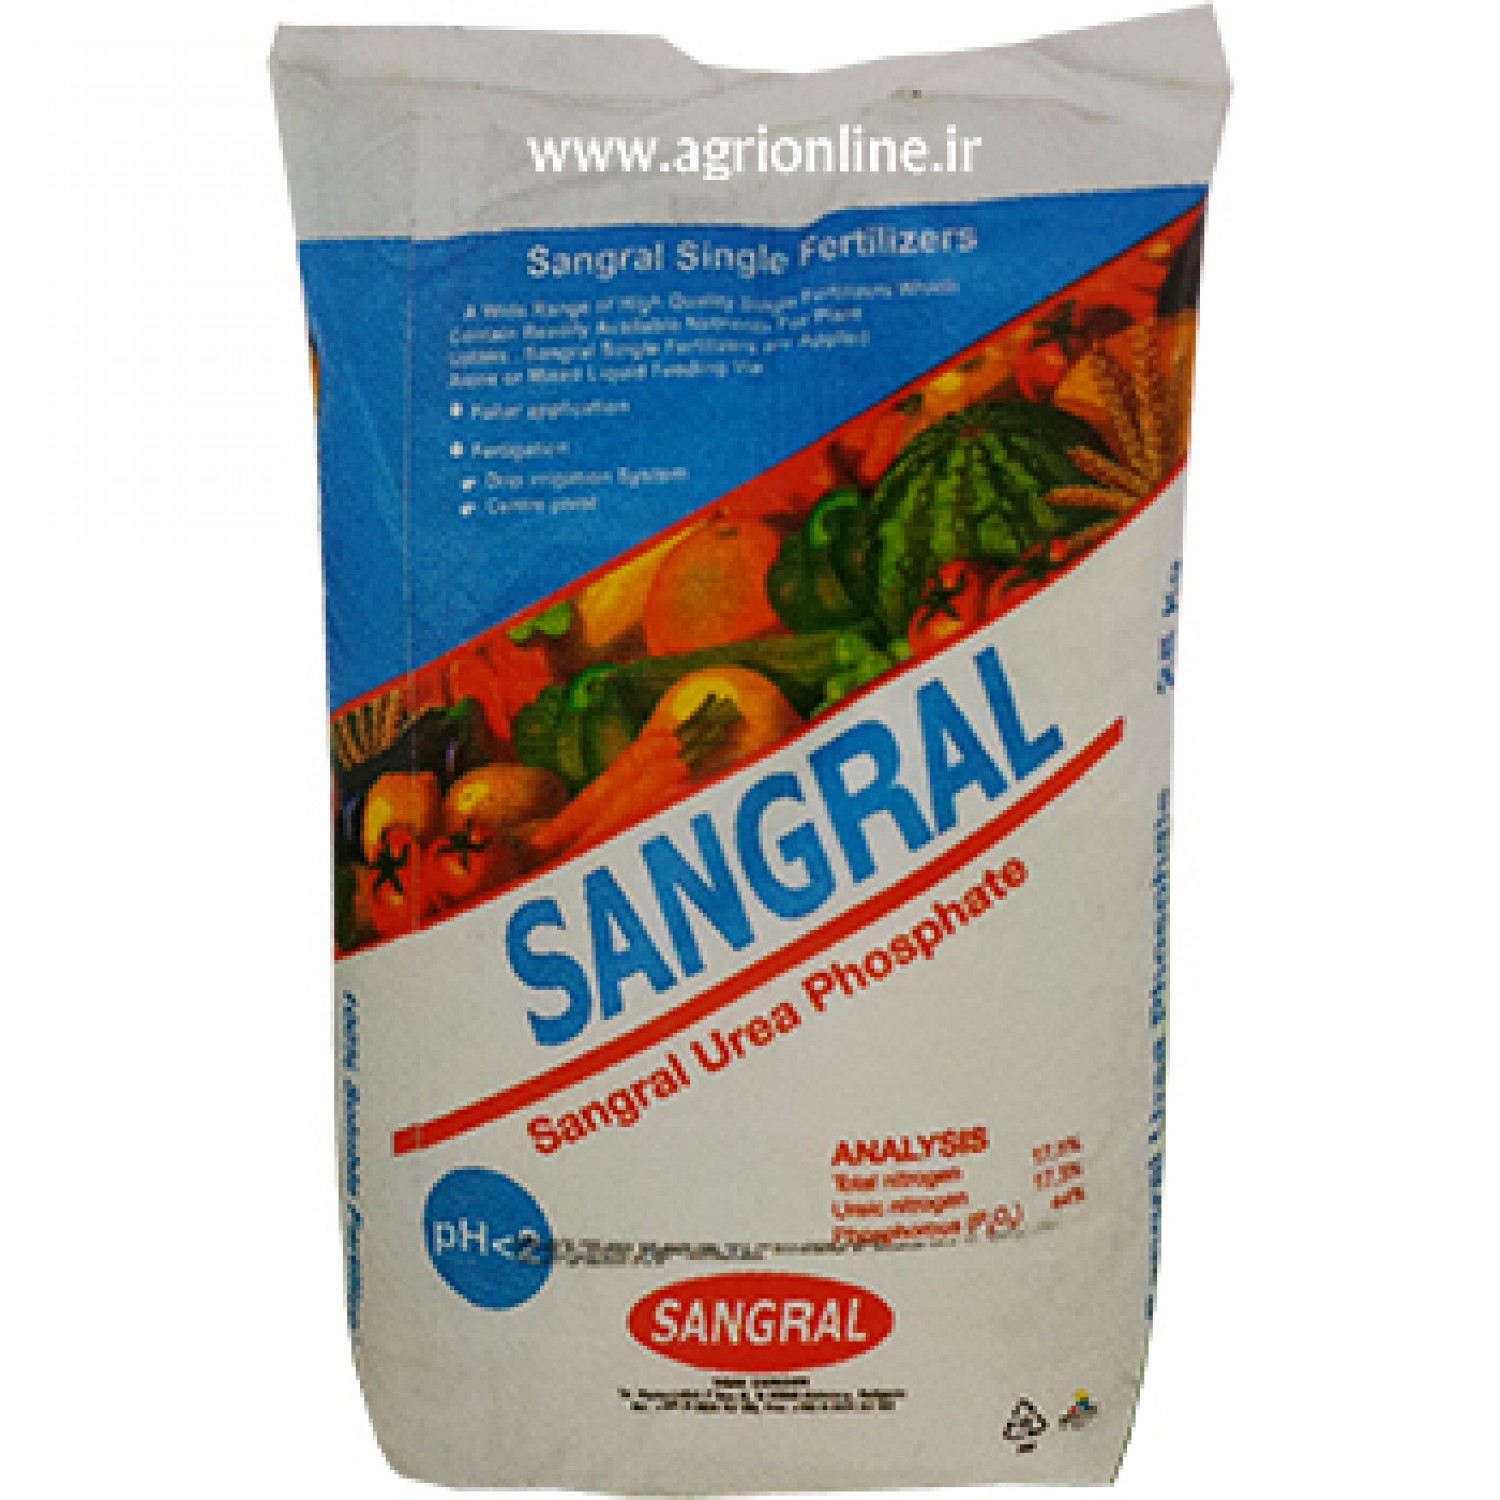 کود سنگرال اوره فسفات  44-18 کود ماکرو پودر کیسه 25 کیلویی- sangral urea phosphate